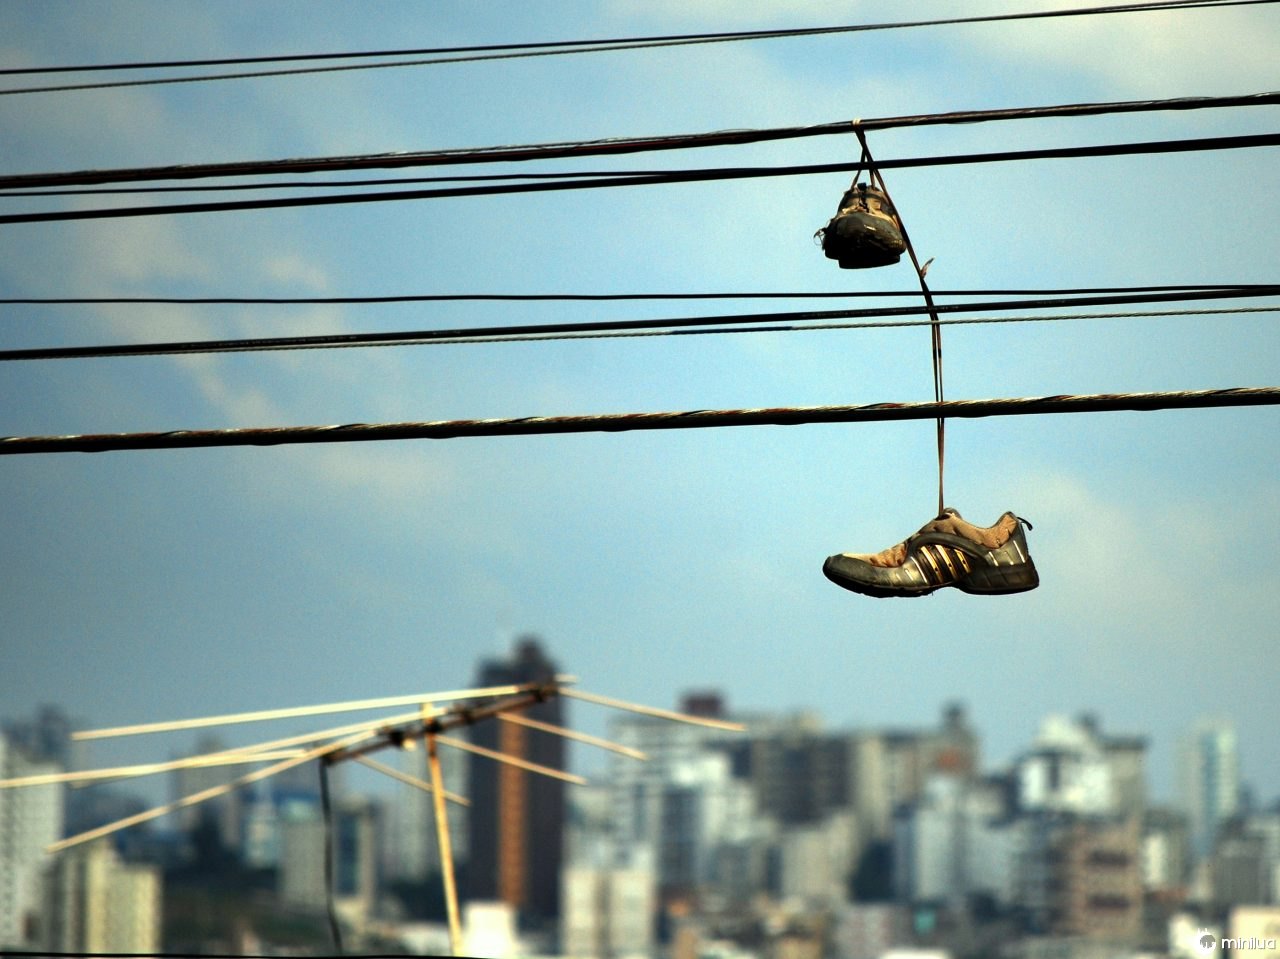  Sokak kablolarına asılı bir çift spor ayakkabı görmüşsünüzdür ama bu ne anlama geliyor?